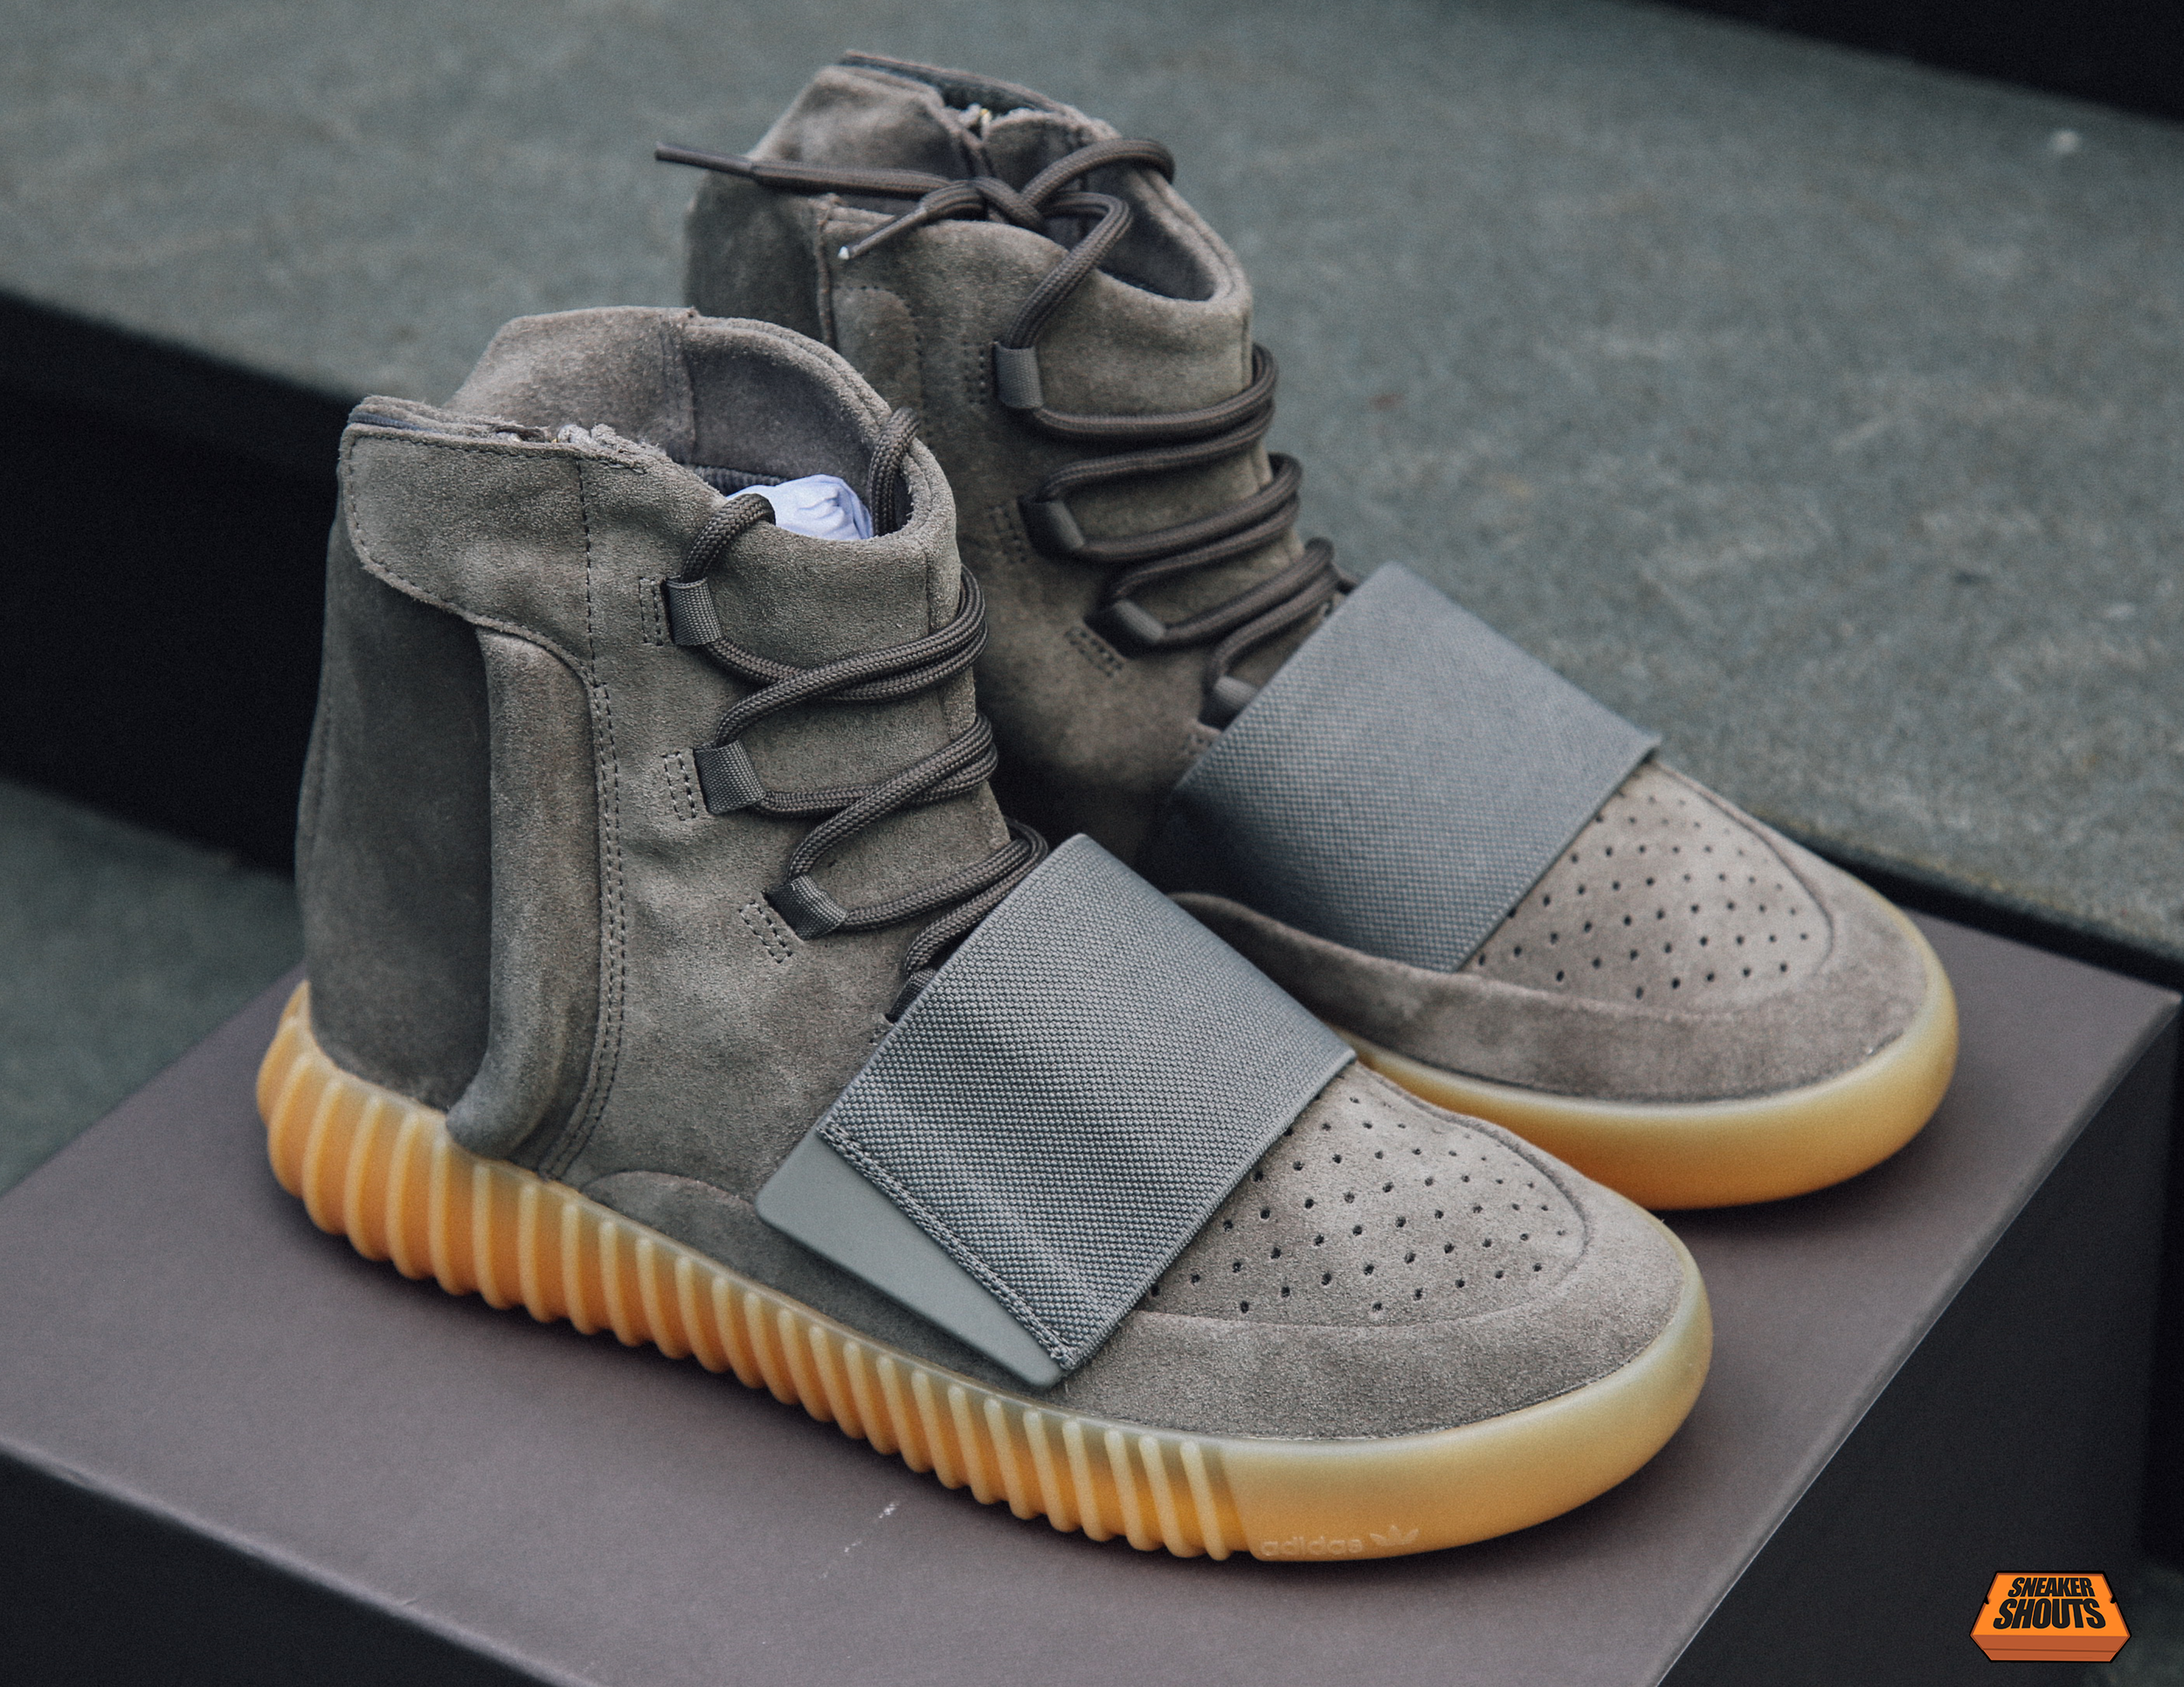 Elegibilidad banda Actual Exclusive Look at the Adidas Yeezy 750 Boost "Light Grey/Gum" — Sneaker  Shouts